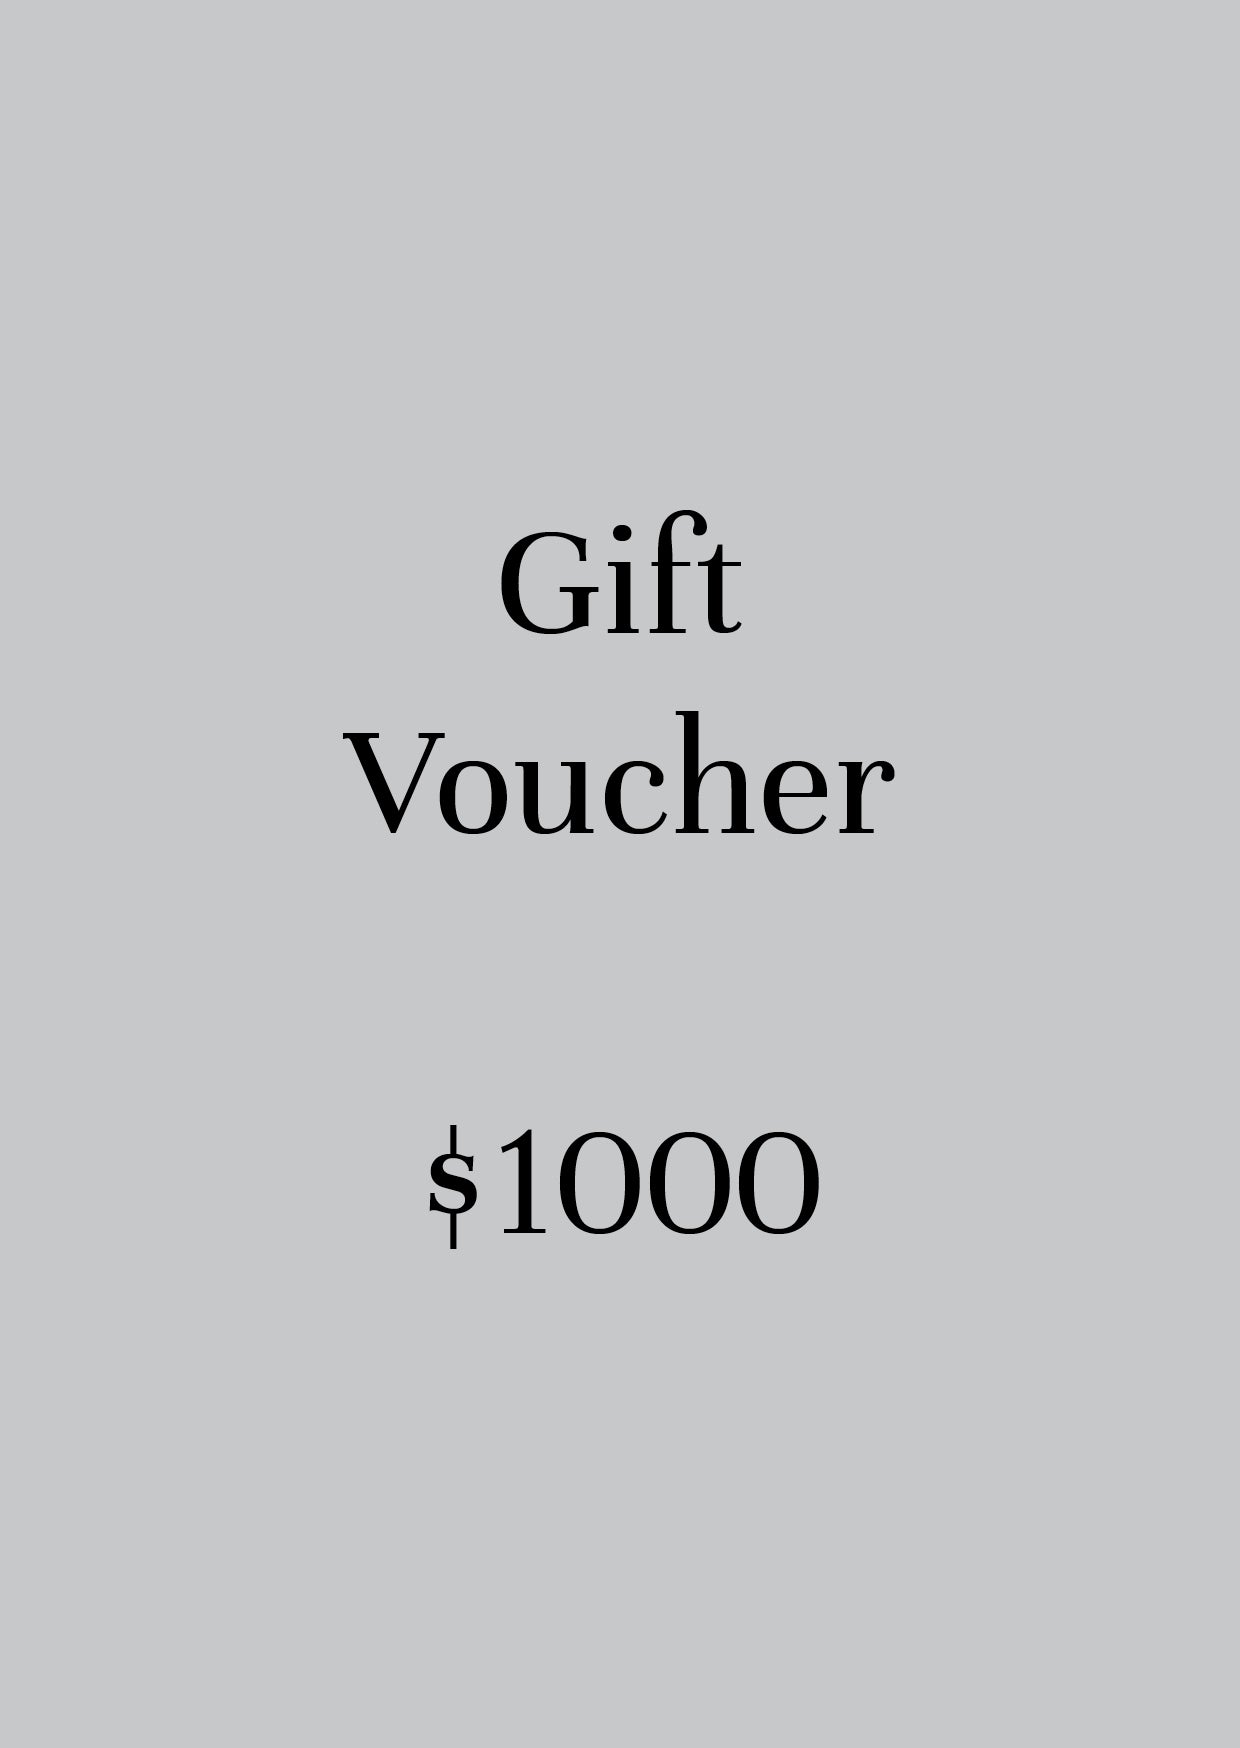 Gift Voucher. $1000